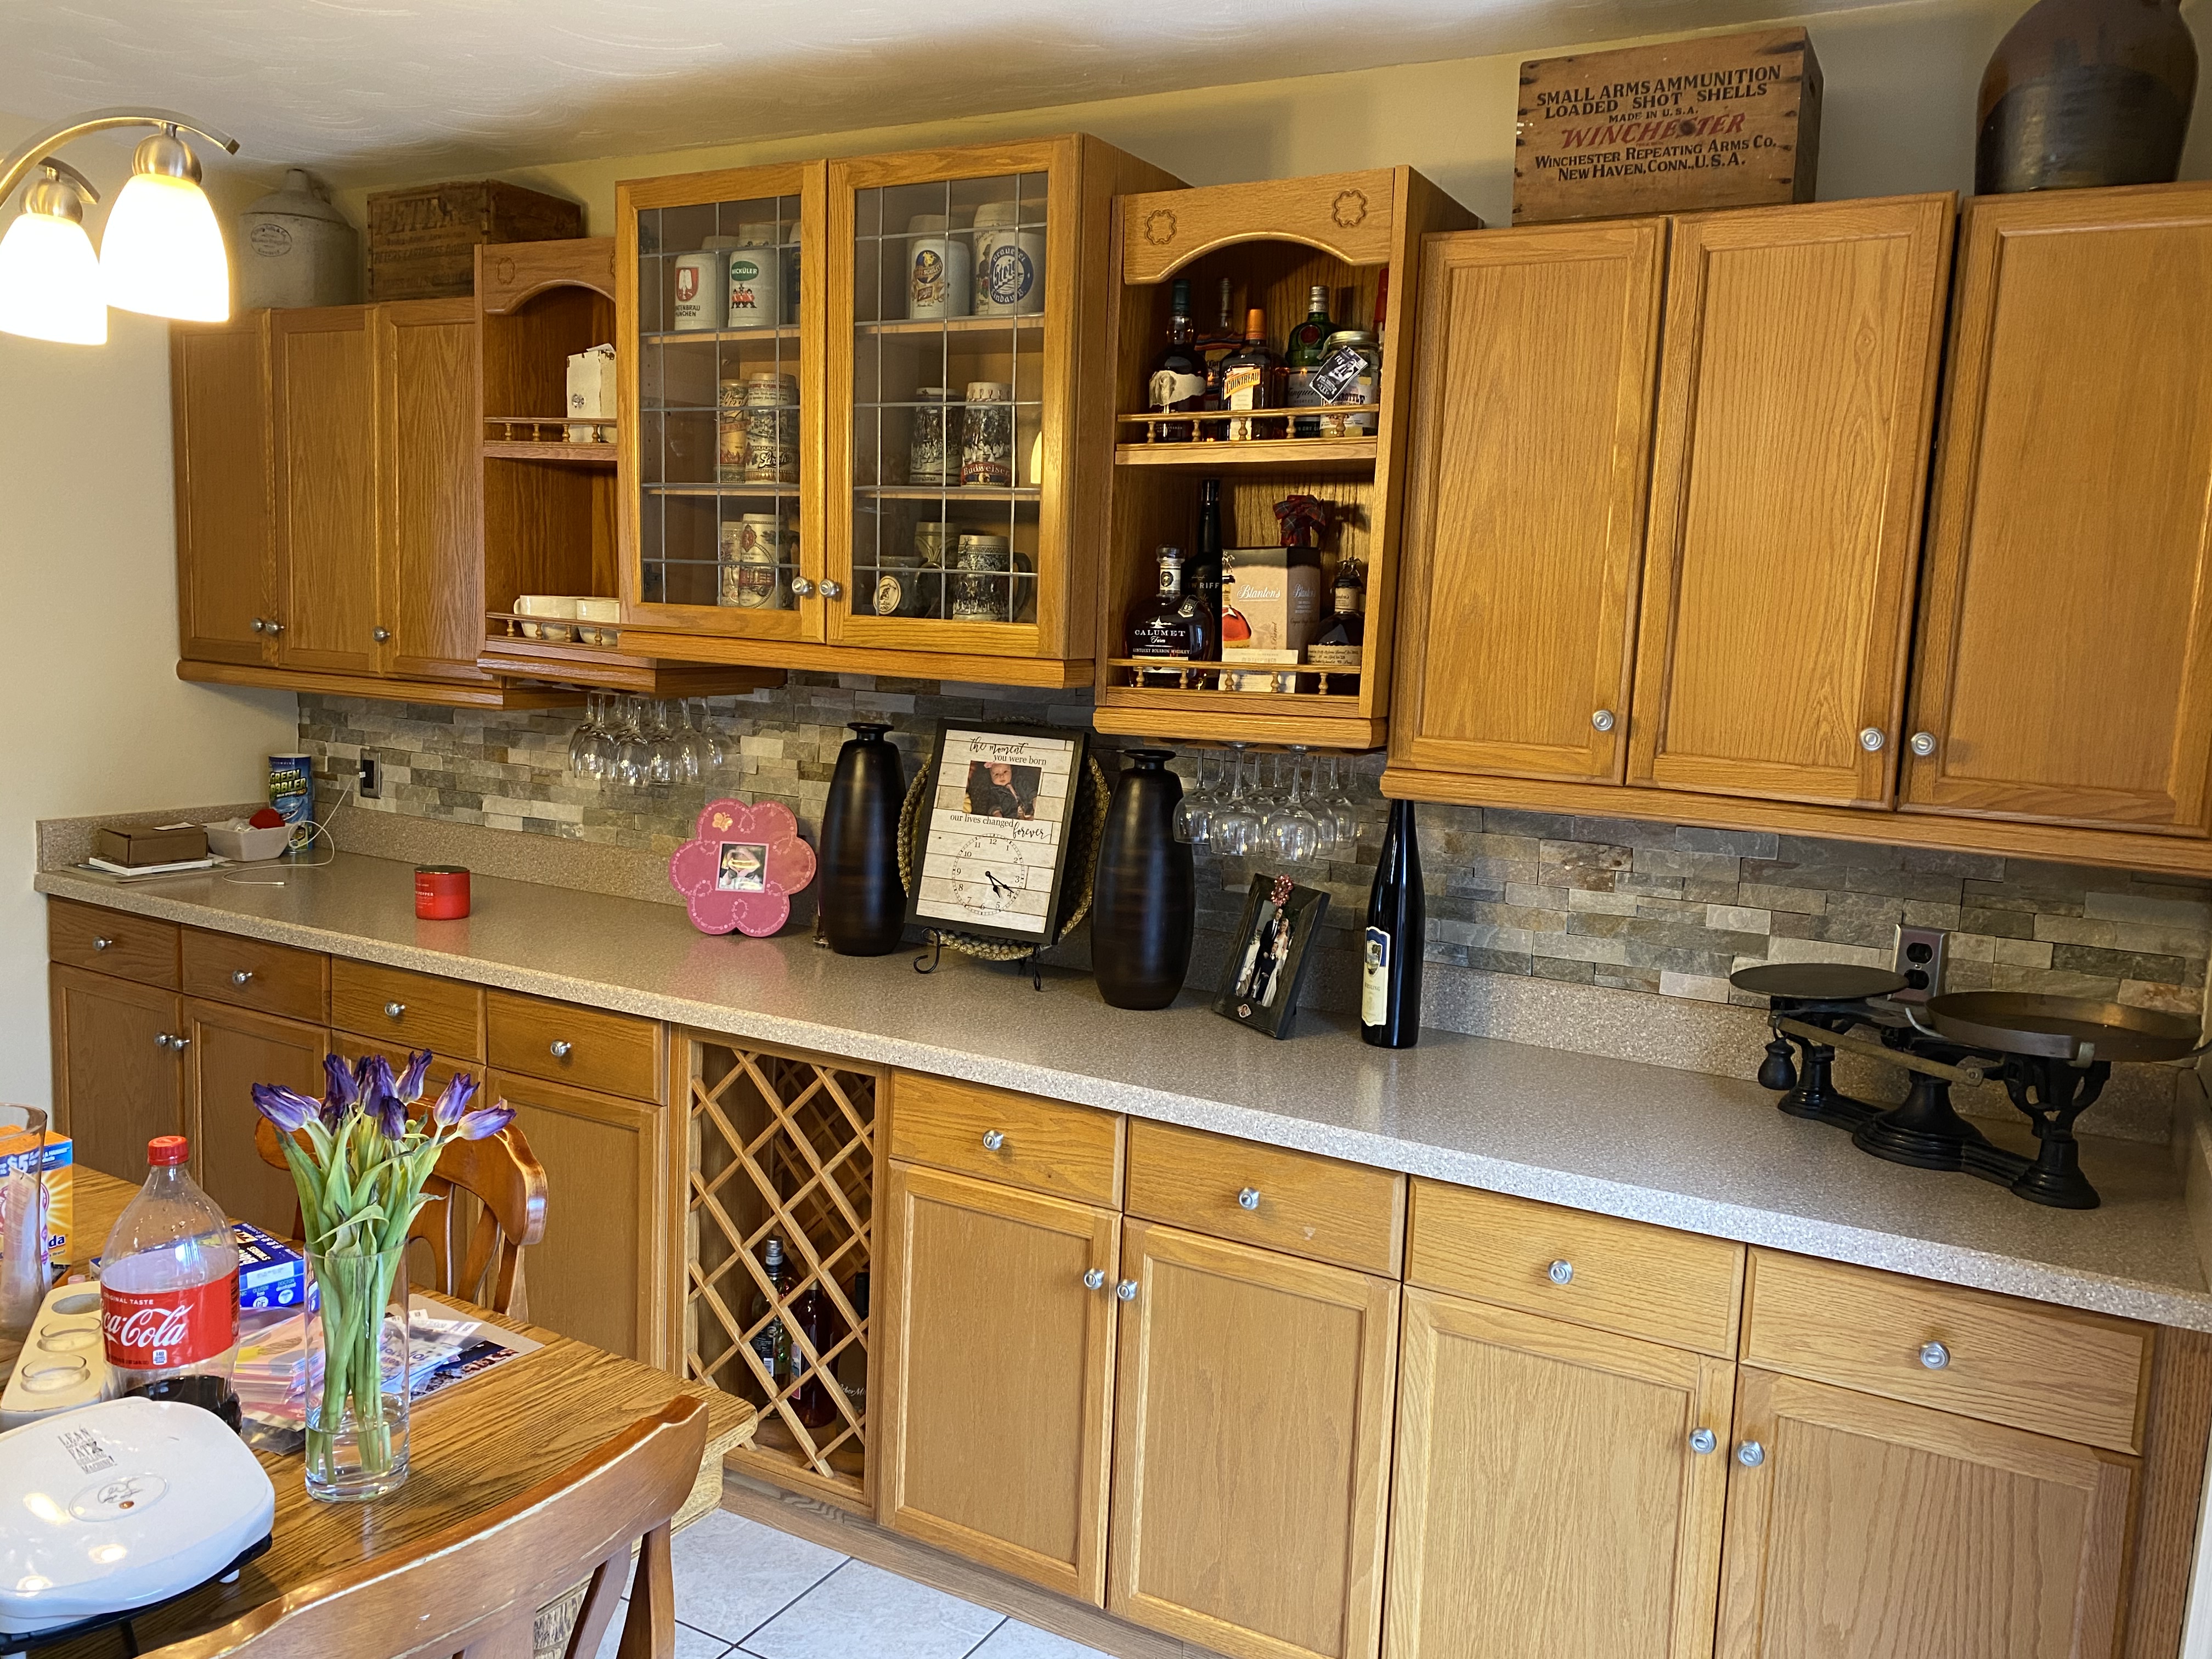 Standard kitchen cabinets